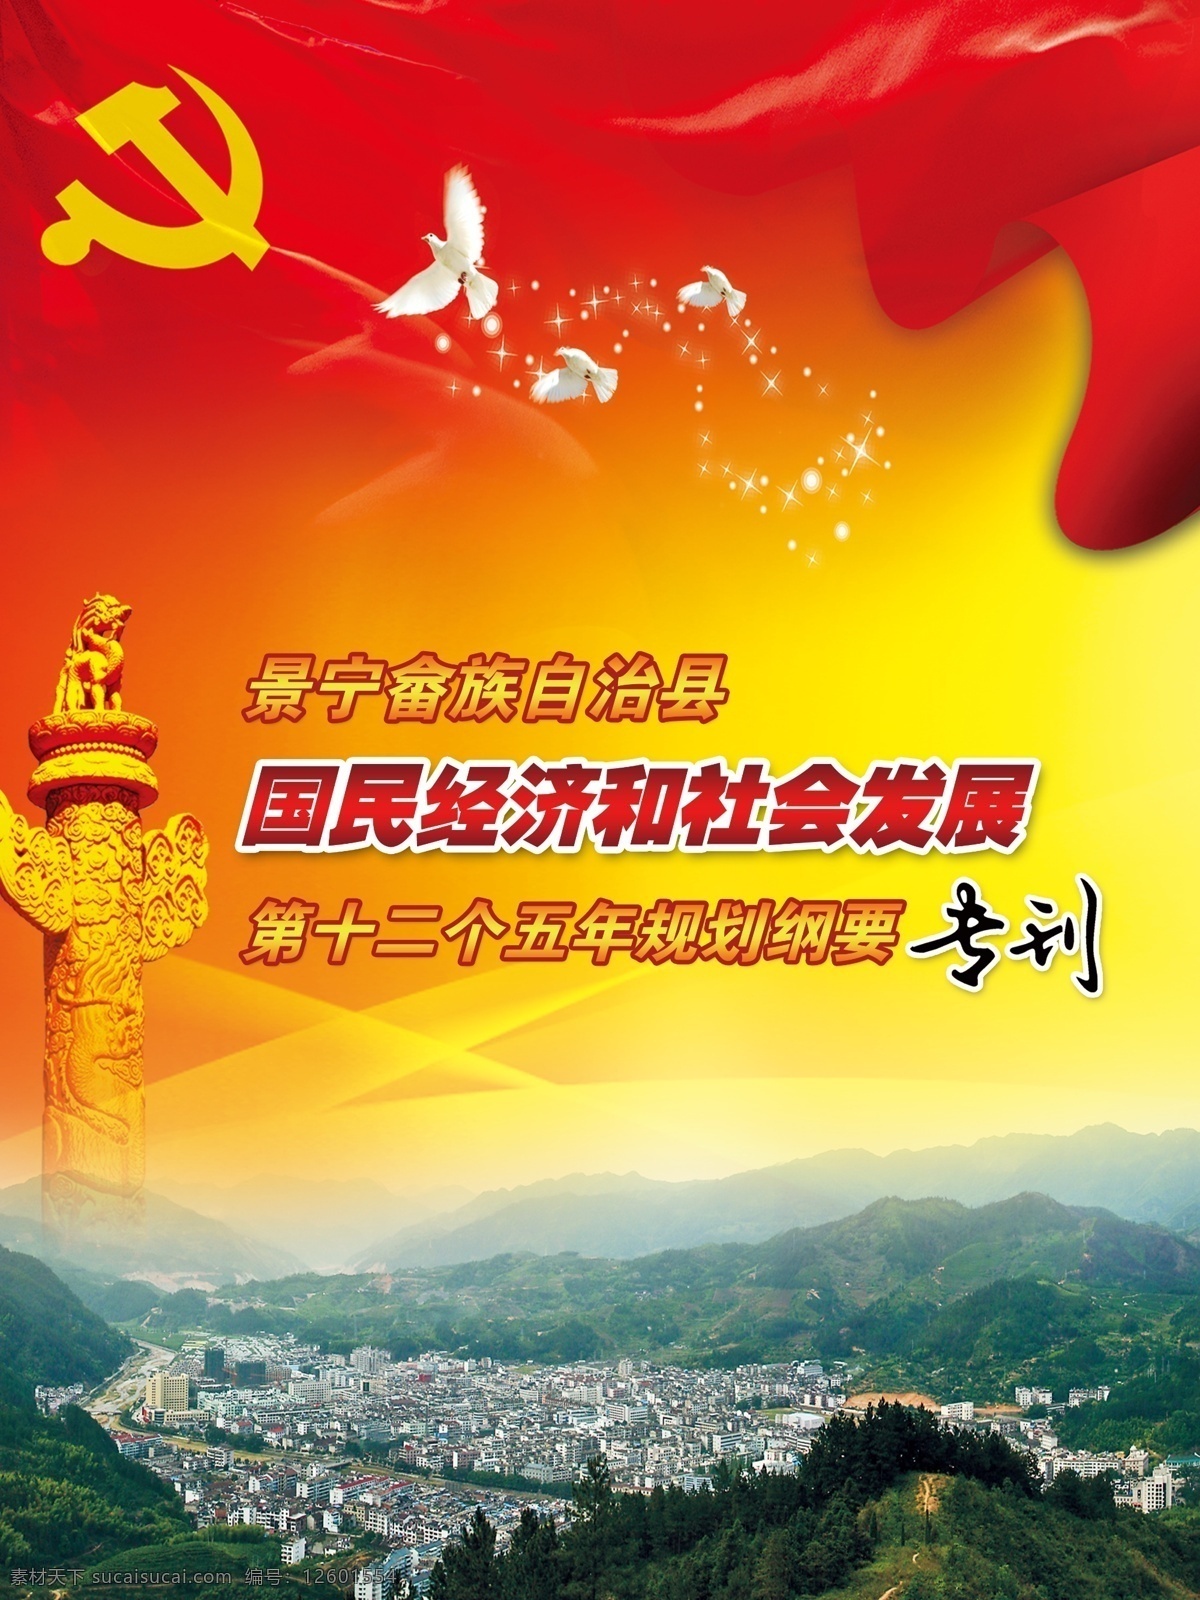 十二五规划 十二五 党旗 鸽子 红色 红黄 景宁县城 畲族 广告设计模板 源文件